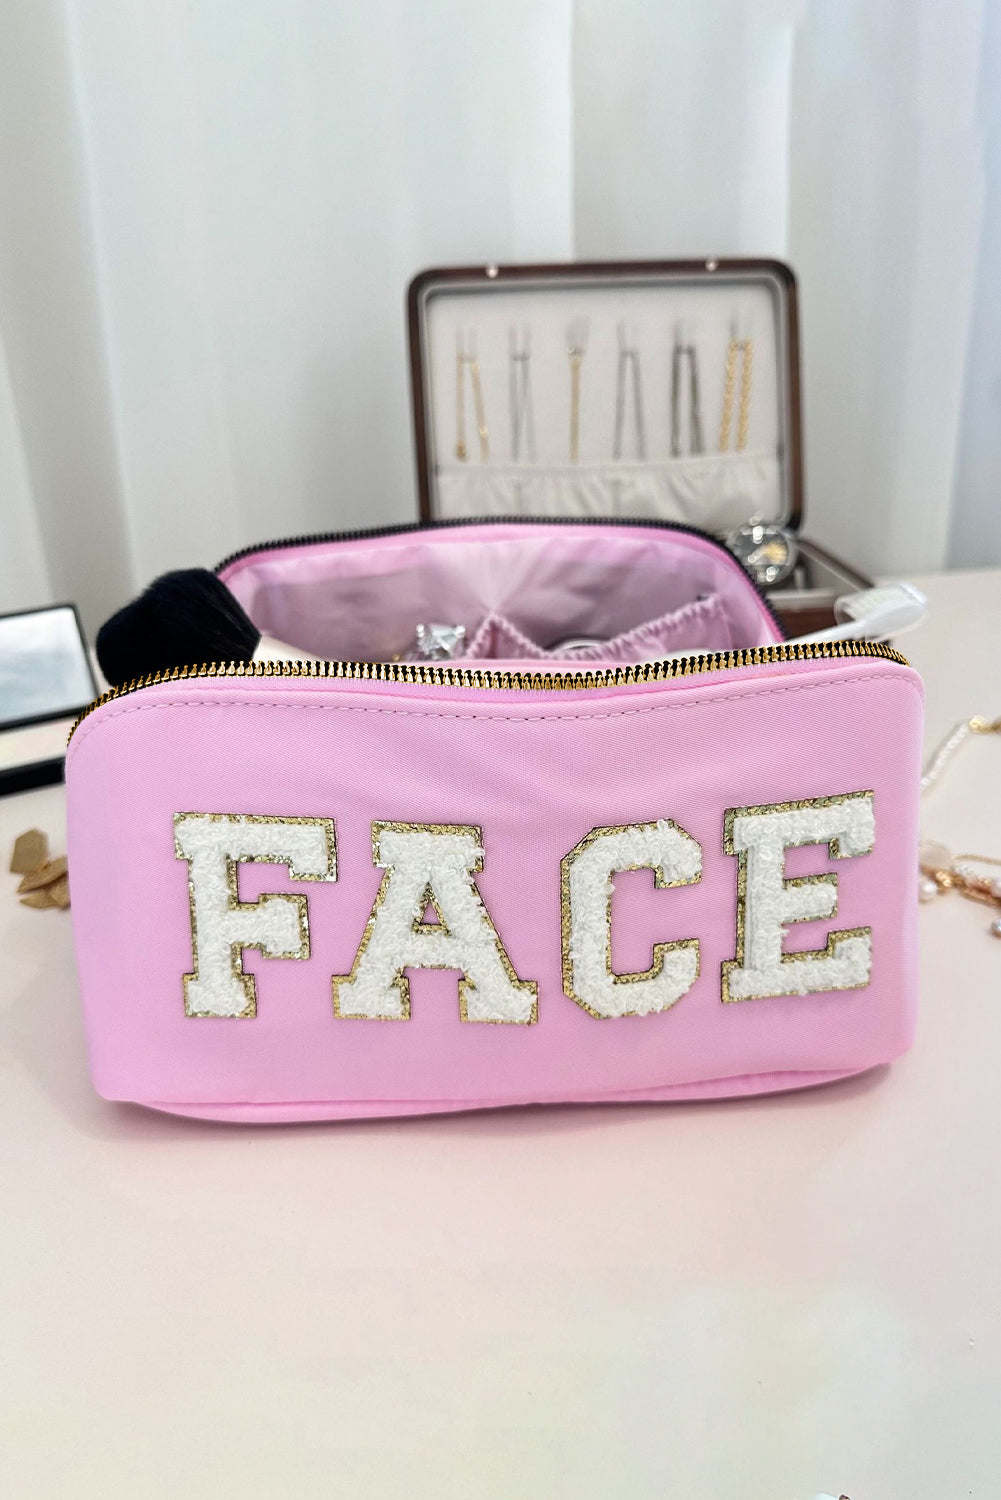 Pirouette Fuzzy FACE Graphic Zipper Portable Makeup Bag